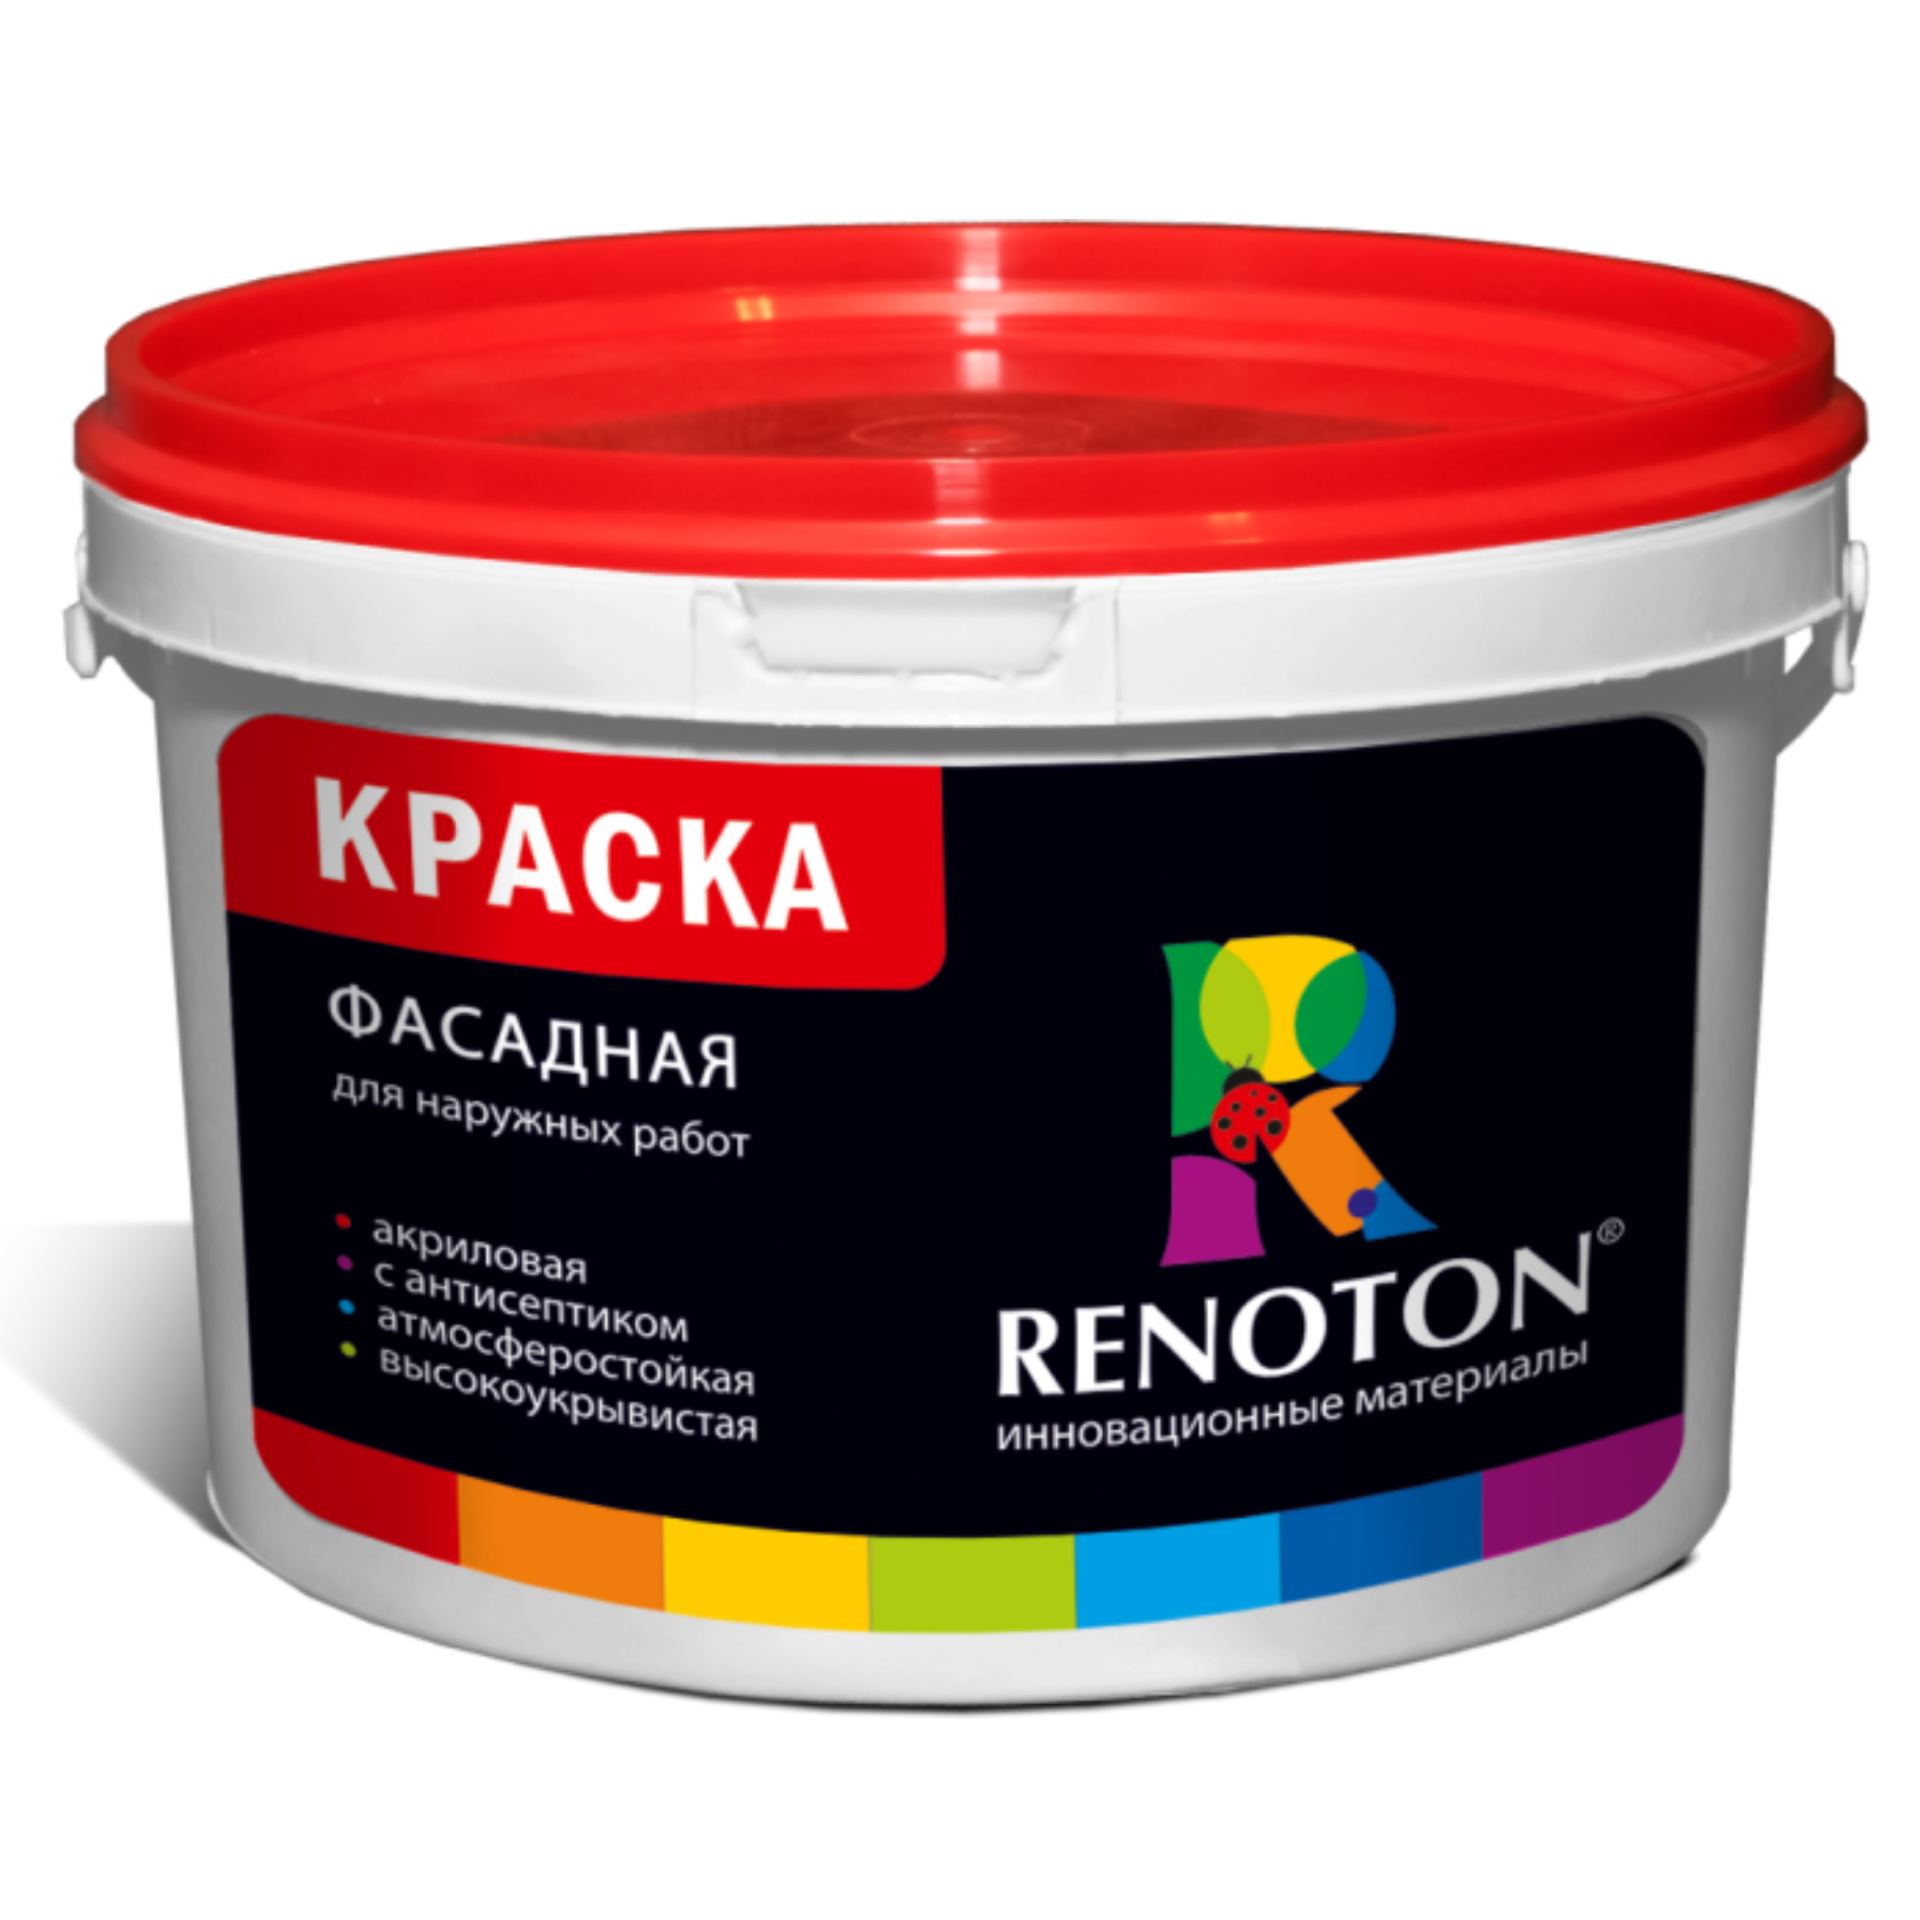 фото Краска вдак renoton kr30facren фасадная, ведро 30кг, атмосферостойкая, белая